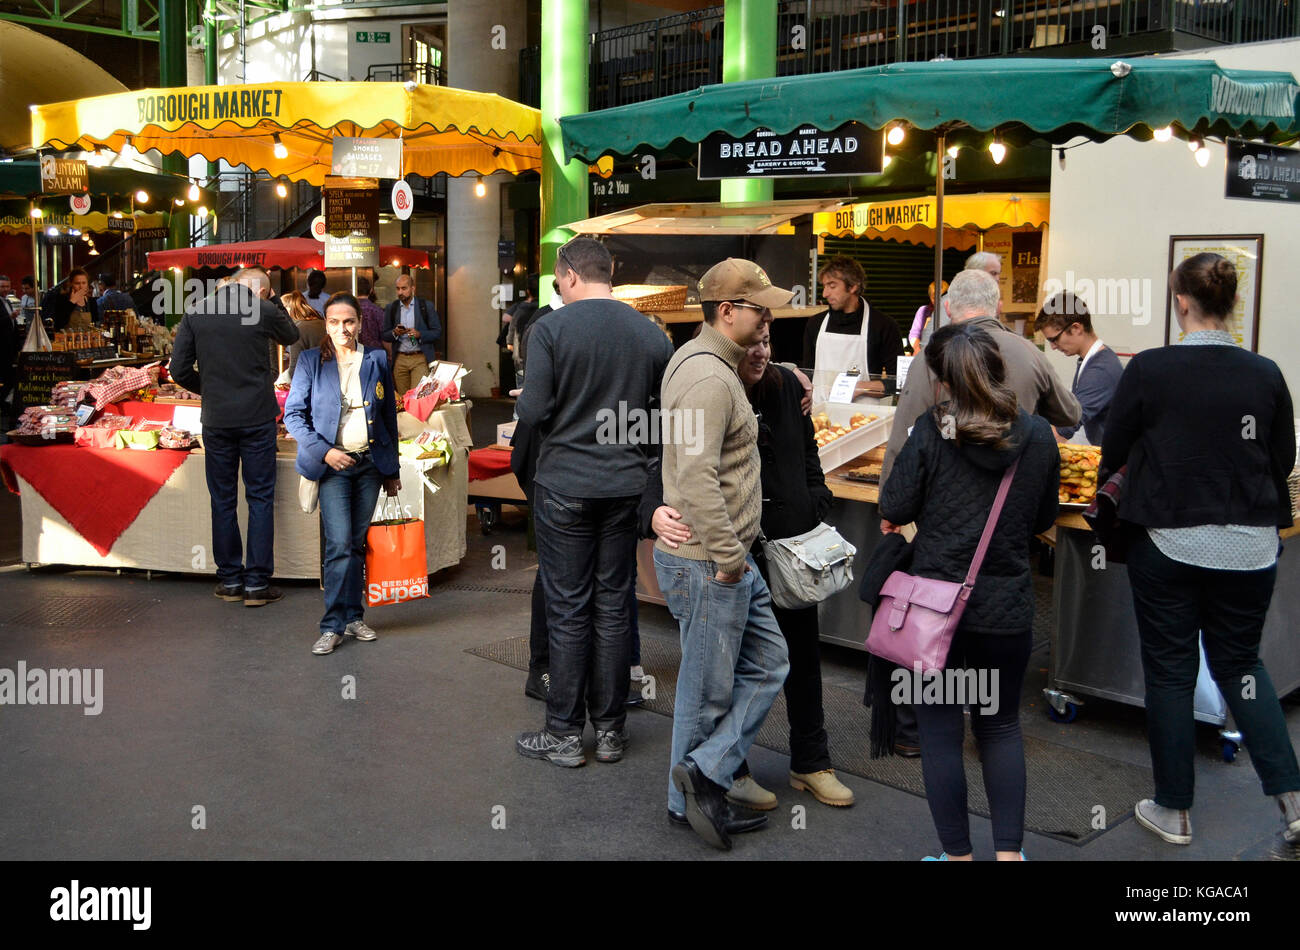 Borough Market, London, UK. Stock Photo